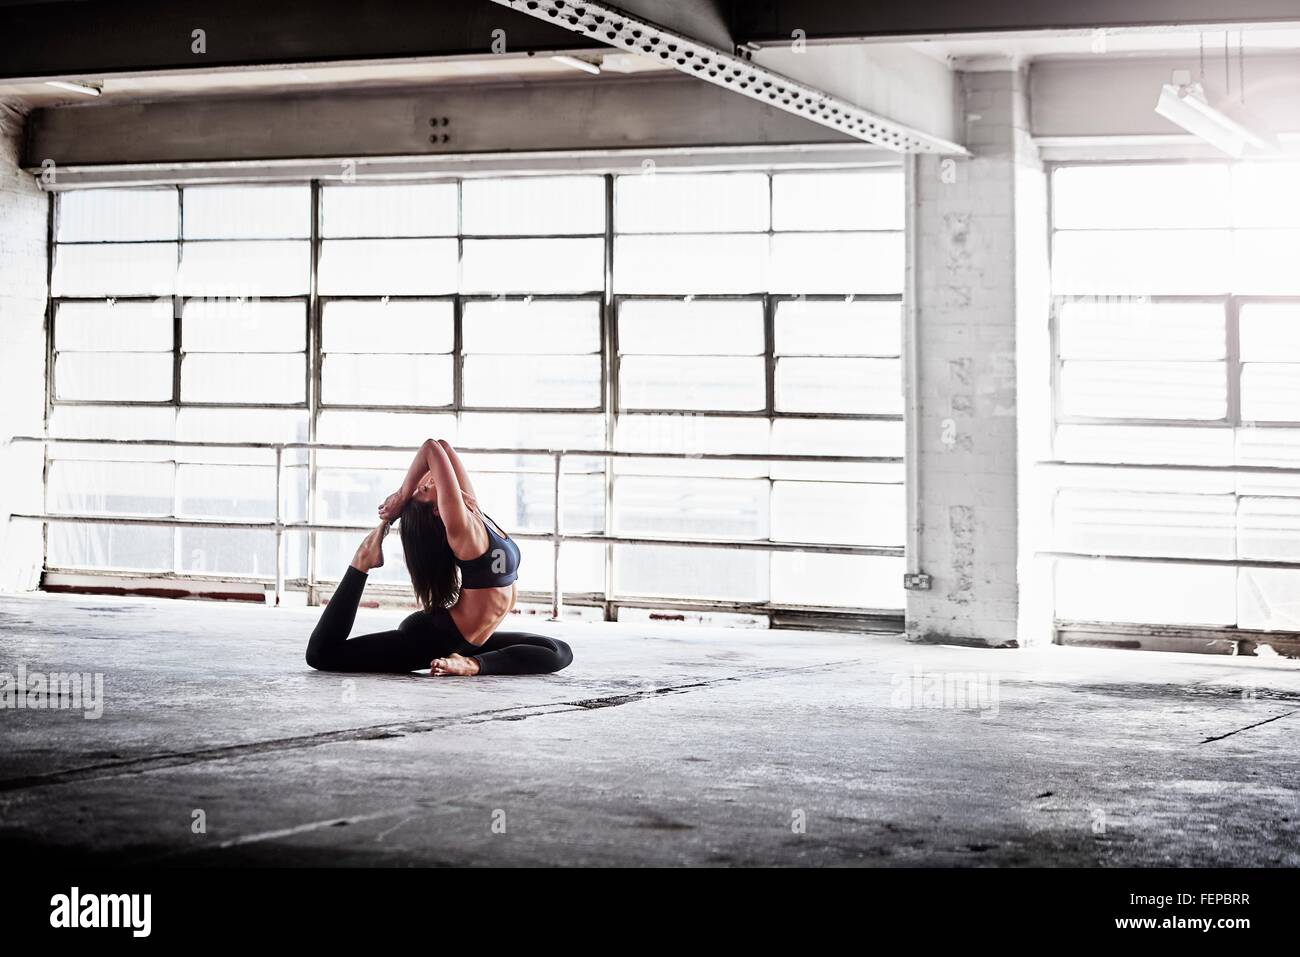 La donna a praticare yoga pone nella parte anteriore della finestra di magazzino Foto Stock